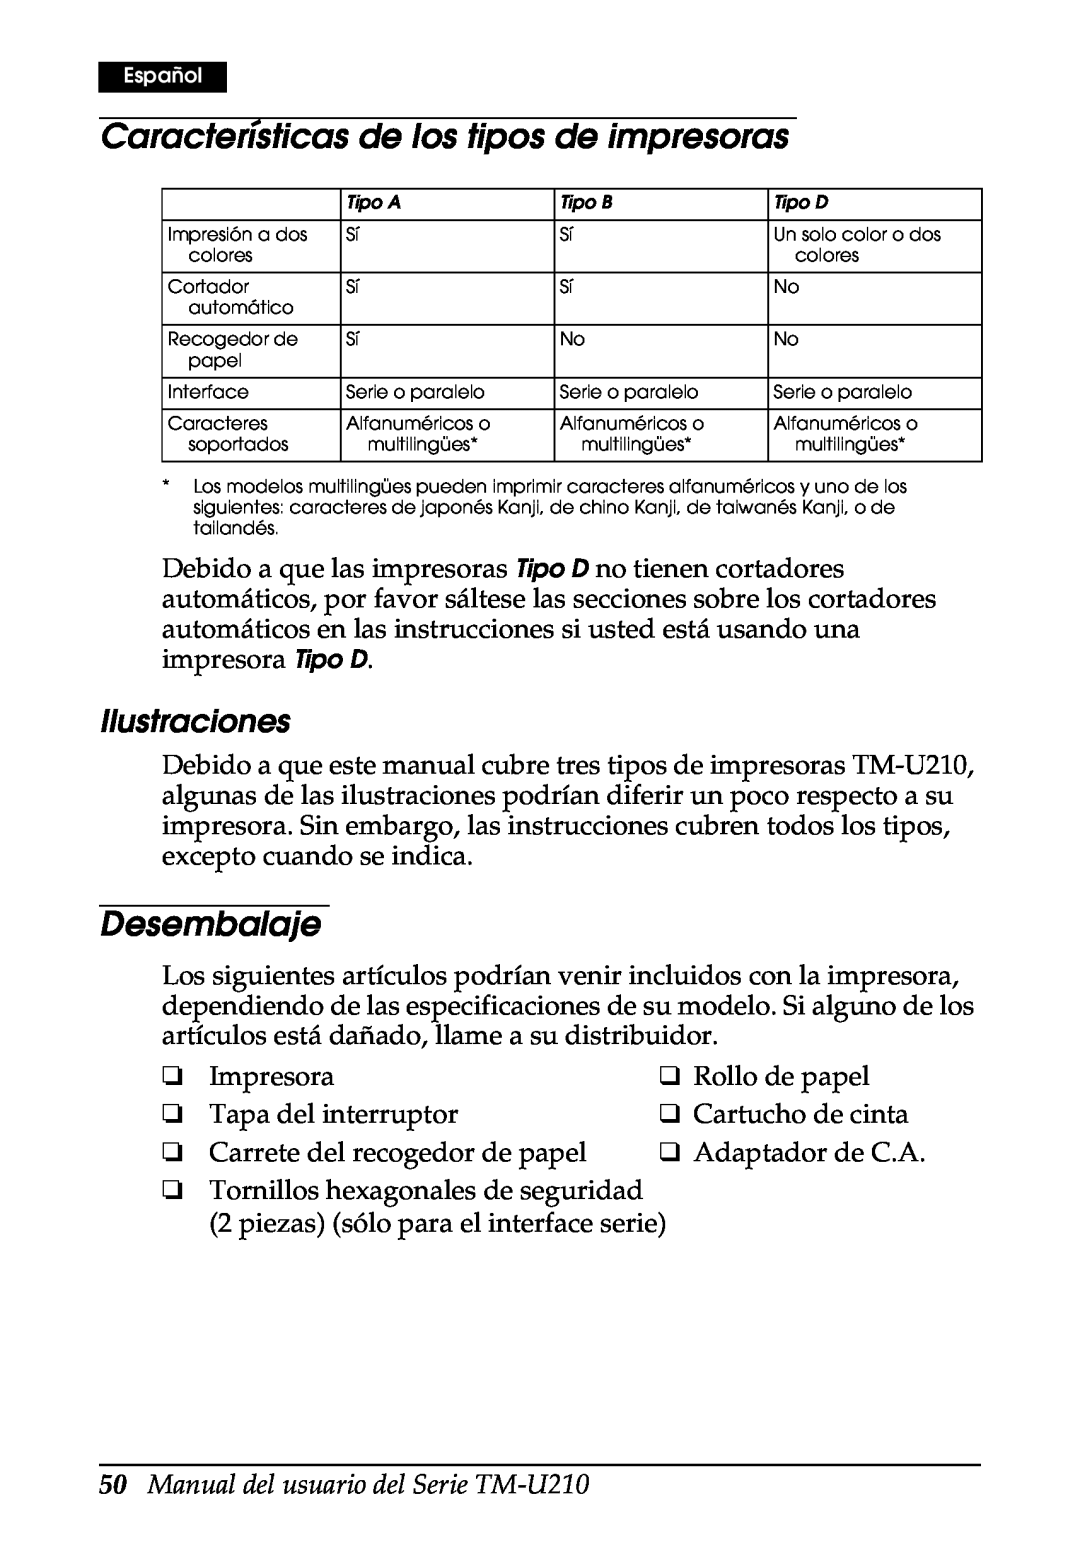 Epson M119A Características de los tipos de impresoras, Desembalaje, Ilustraciones, Manual del usuario del Serie TM-U210 